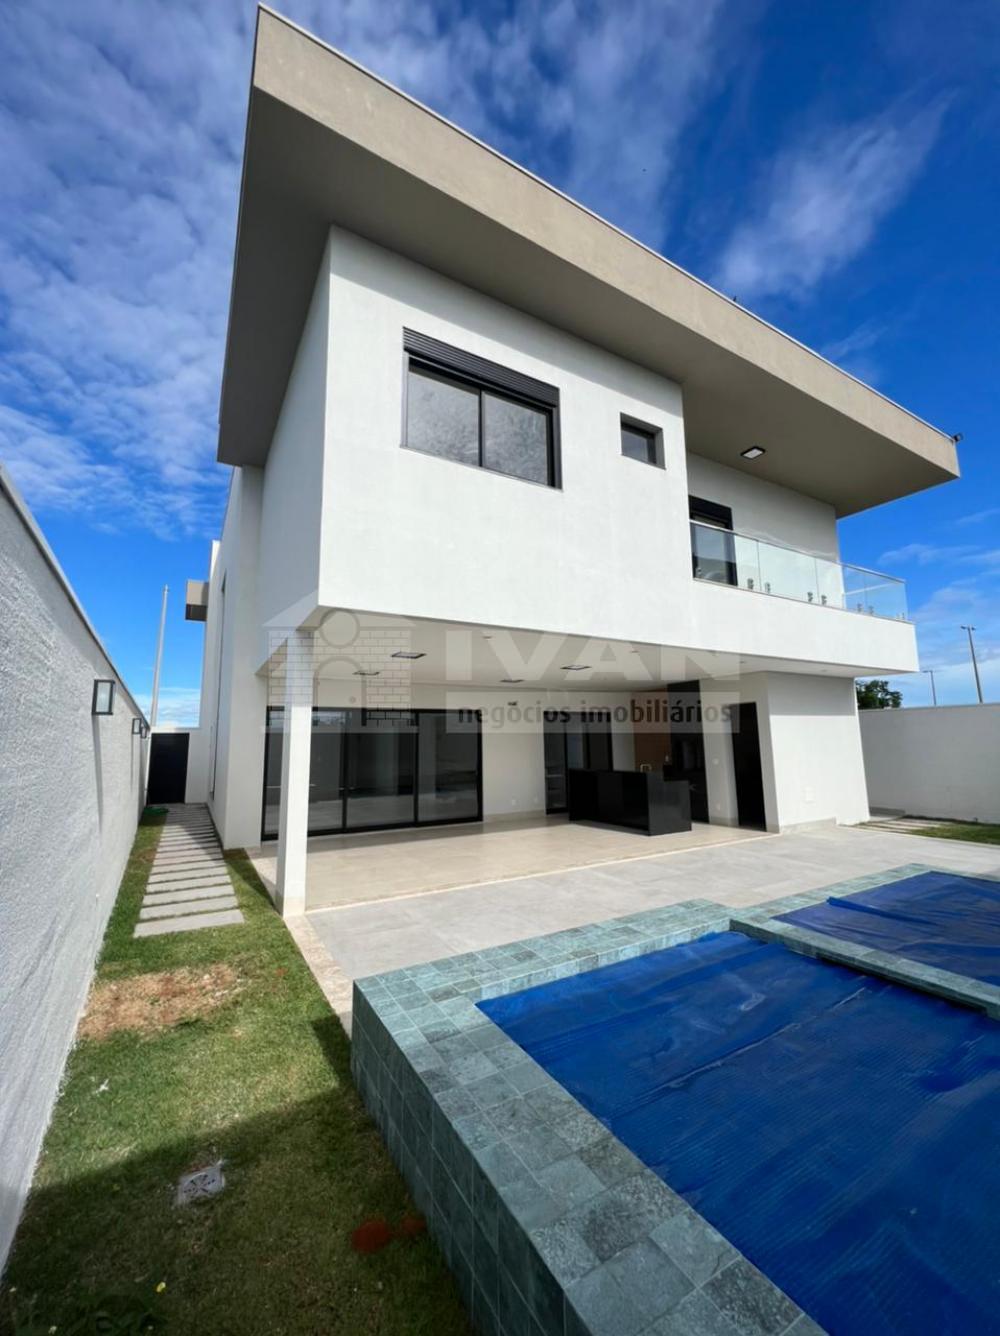 Comprar Casa / Condomínio em Uberlandia R$ 3.500.000,00 - Foto 17